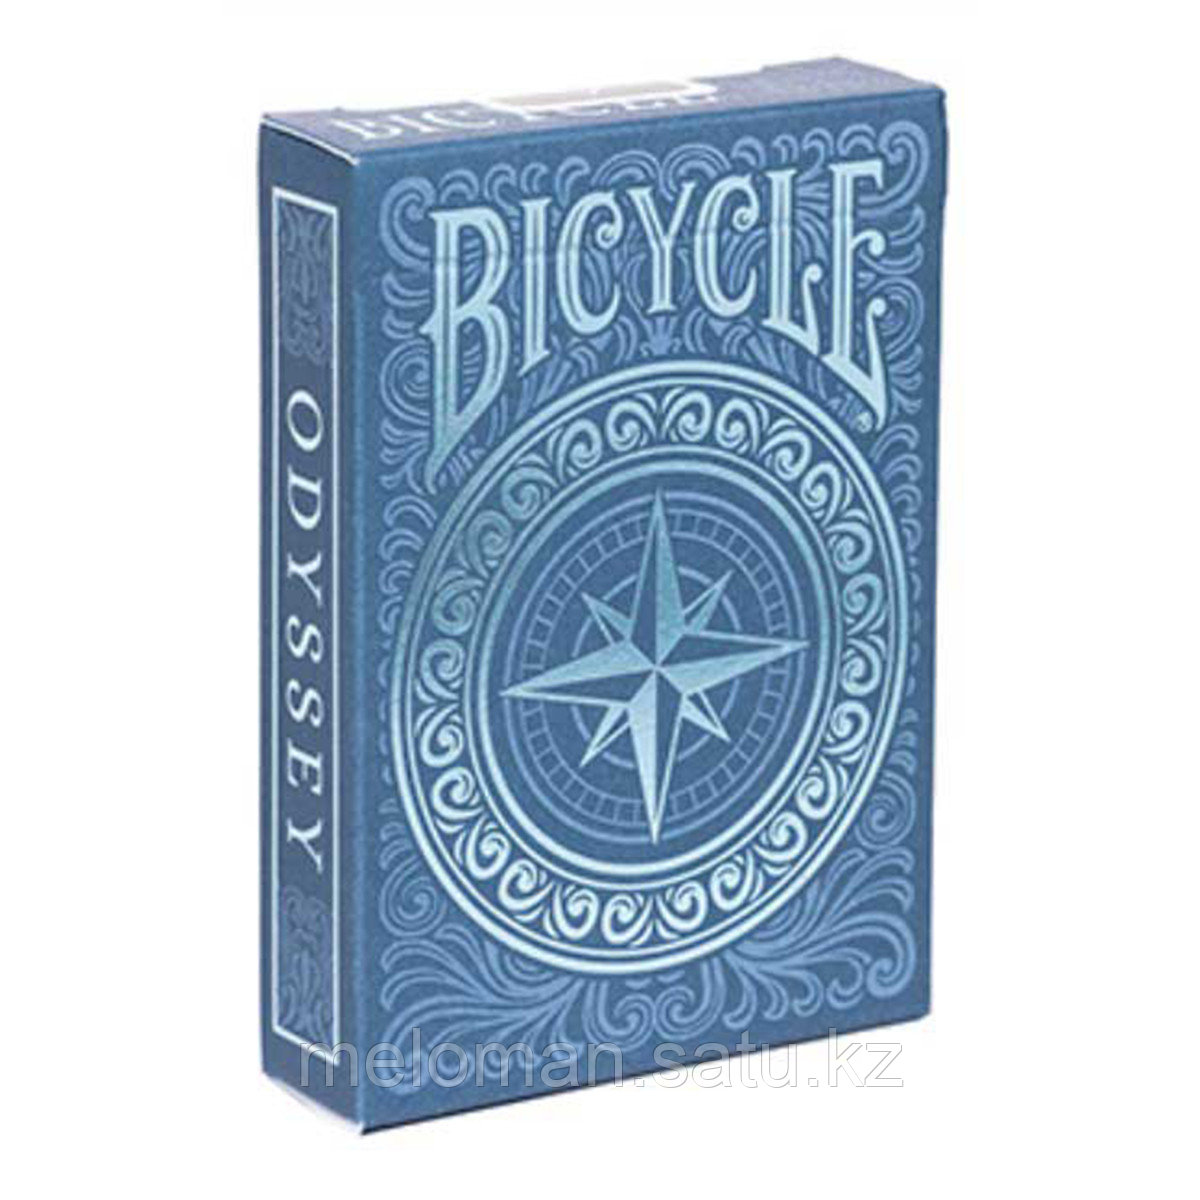 Bicycle: Коллекционная колода карт "Одиссея".